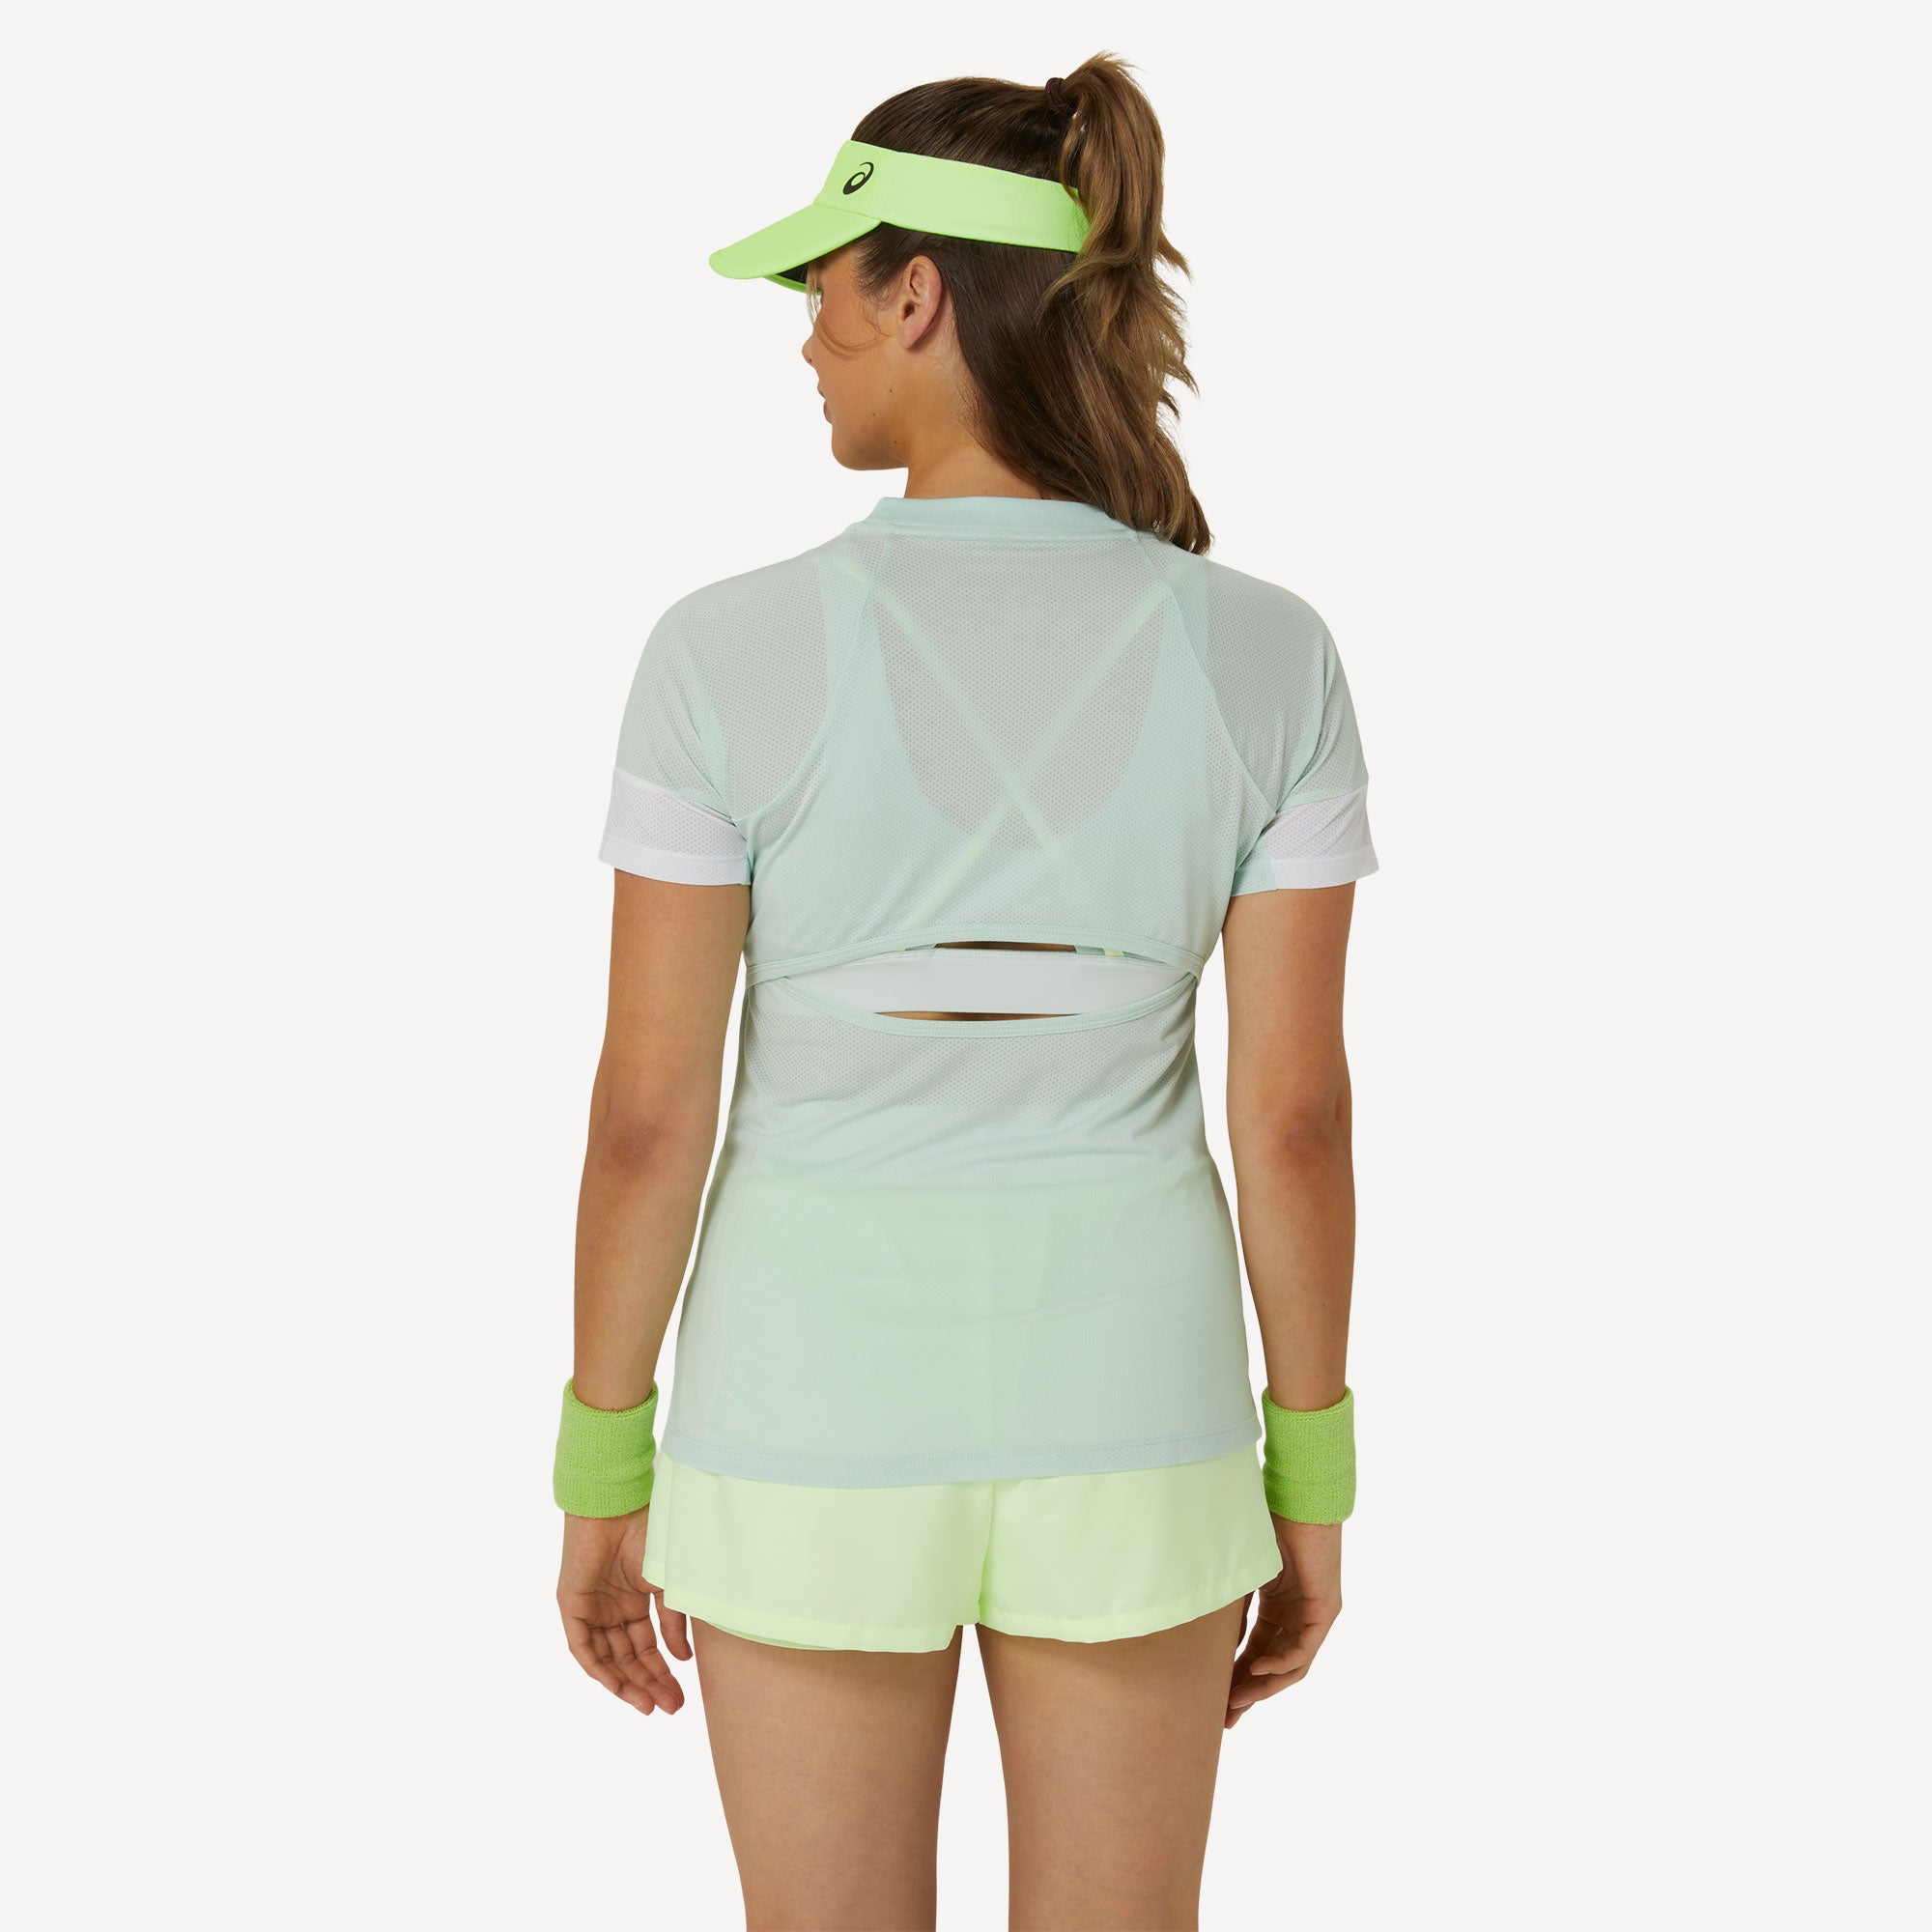 ASICS Game Women's Tennis Shirt - Green (2)